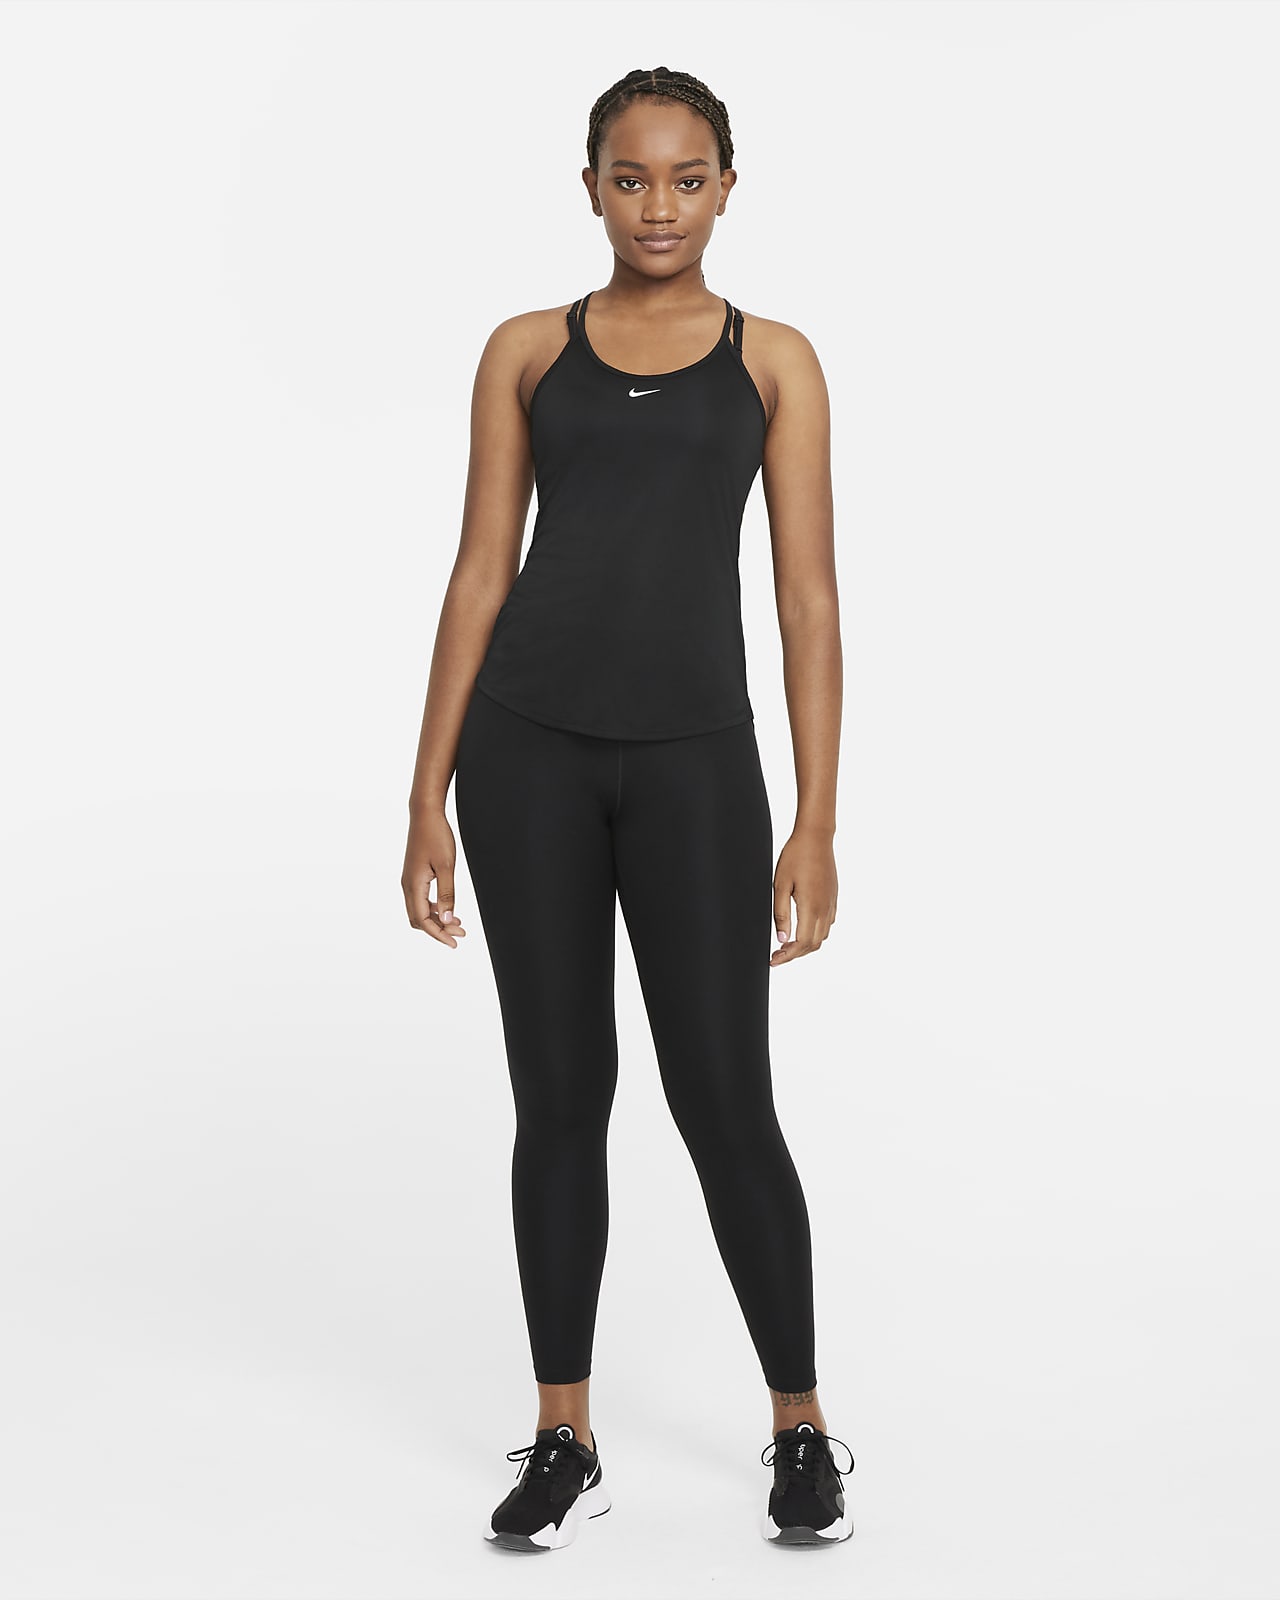 Nike Yoga Womens Dri-FIT Ribbed Tank Top Gym Training Black Small